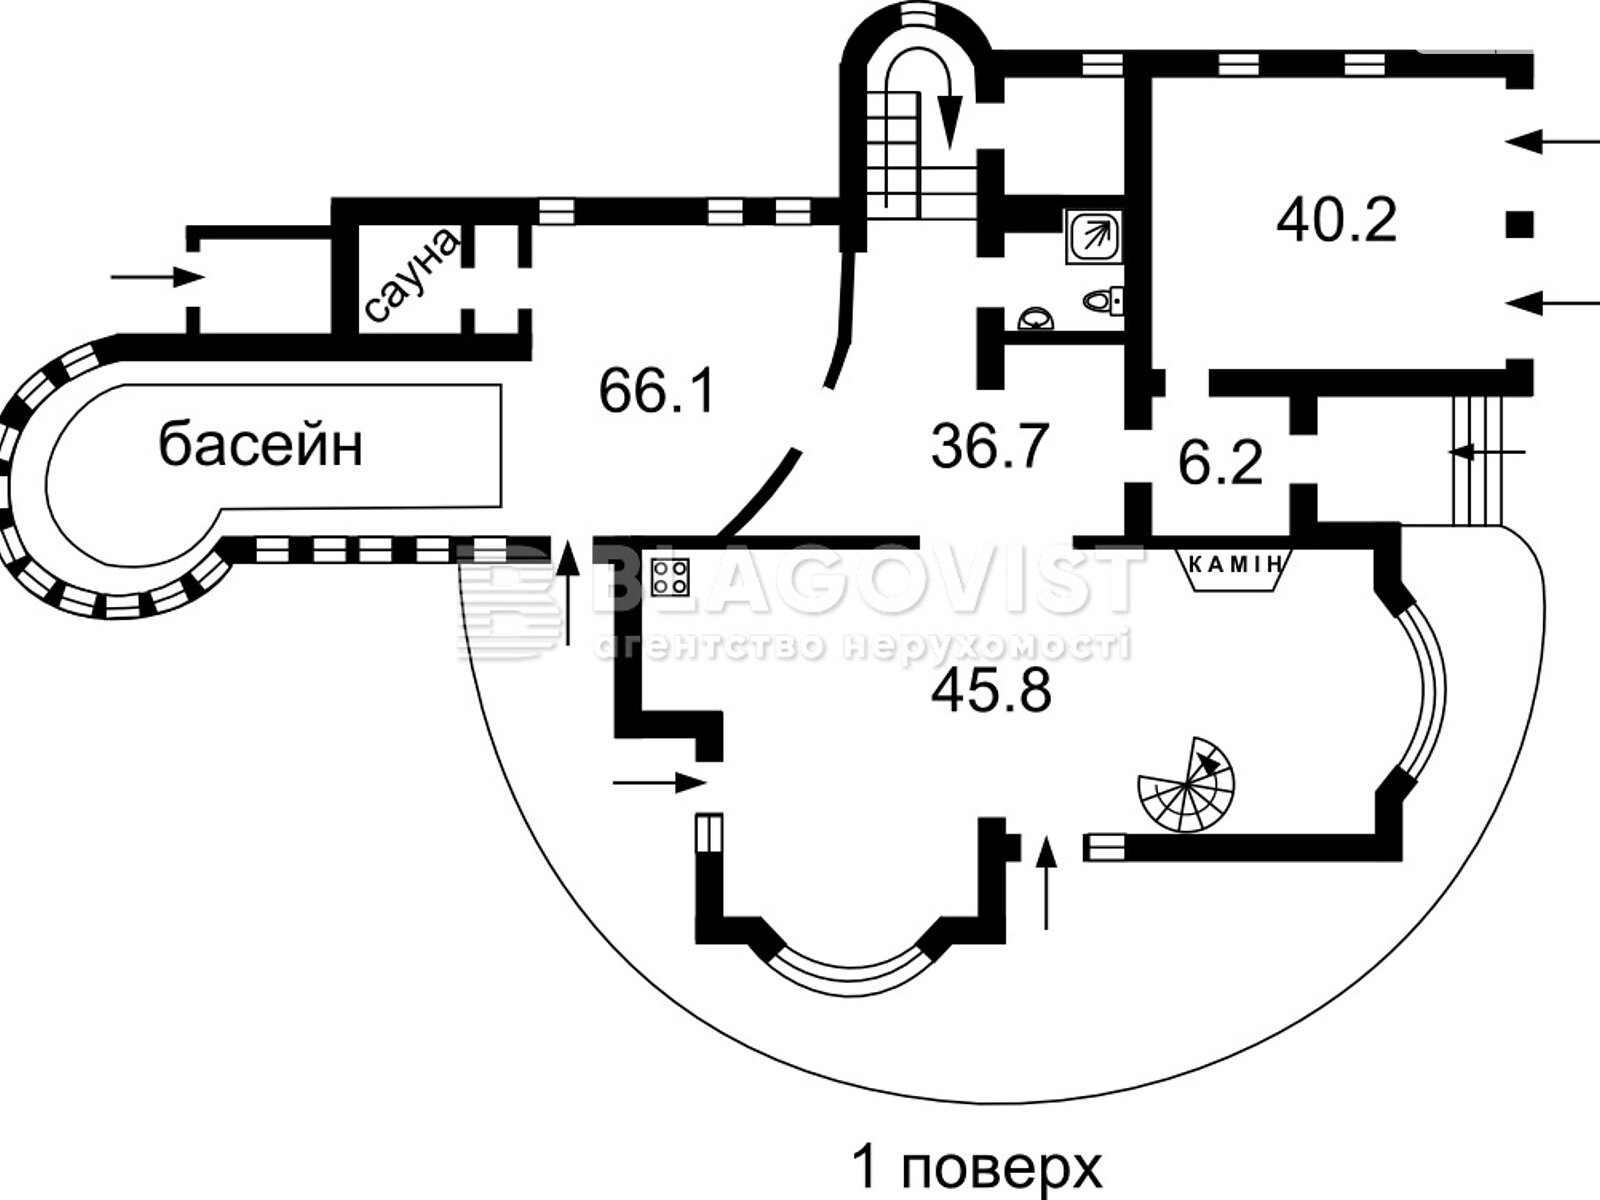 Продаж частини будинку в Боярці, вулиця Незалежності (50 років Жовтня), 5 кімнат фото 1